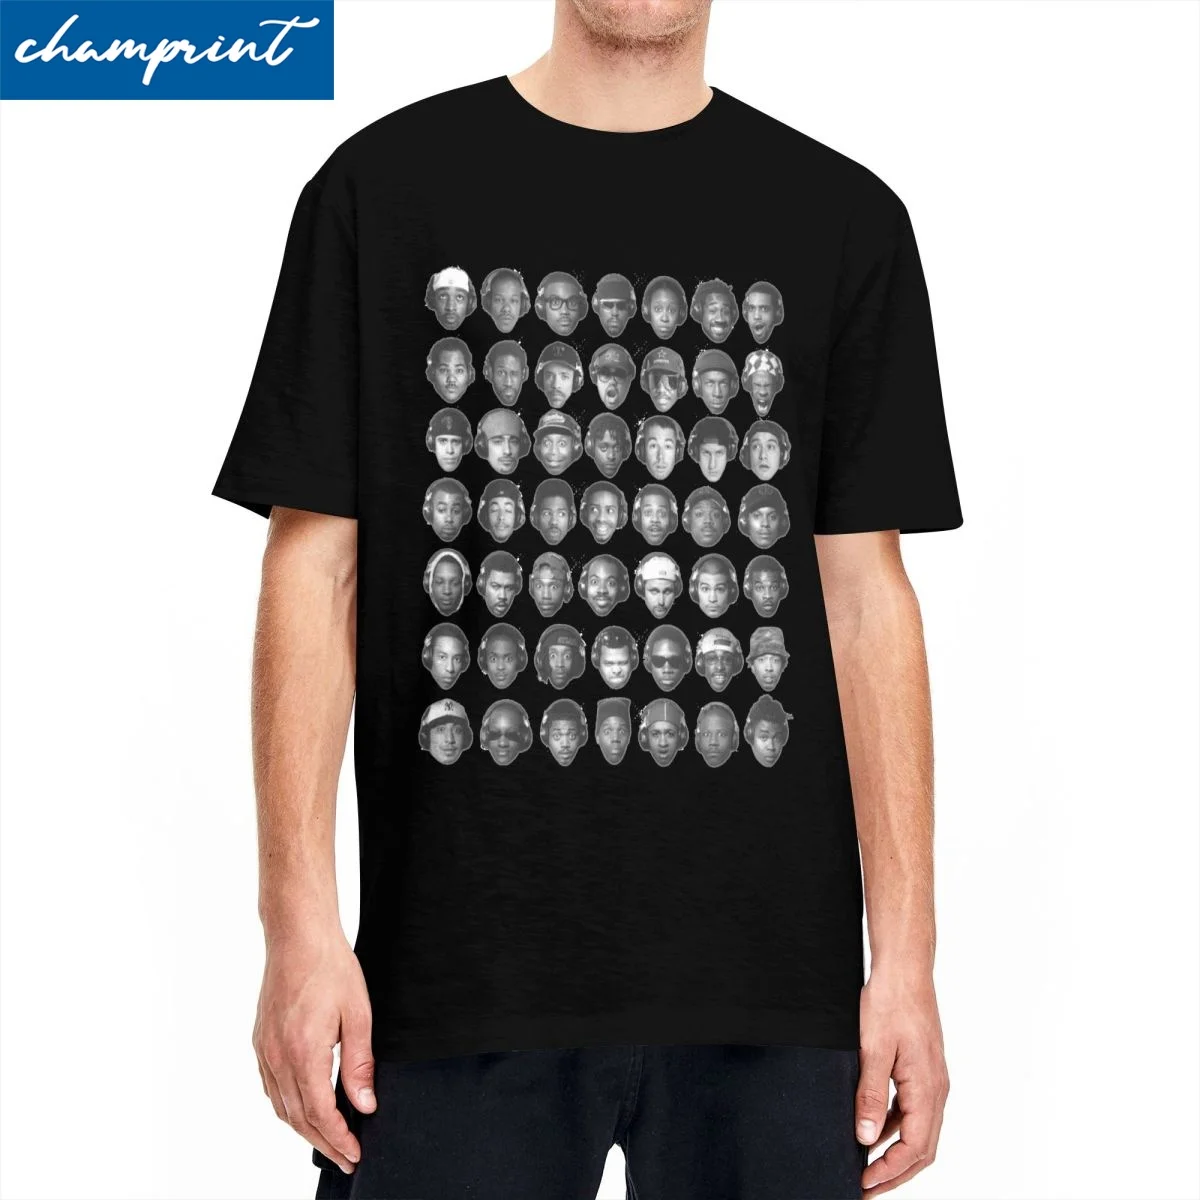 

Midnight Marauders A Tribe Called Quest ATCQ T-Shirt Men Women Round Collar Cotton T Shirt Short Sleeve Tee Shirt 5XL Clothes